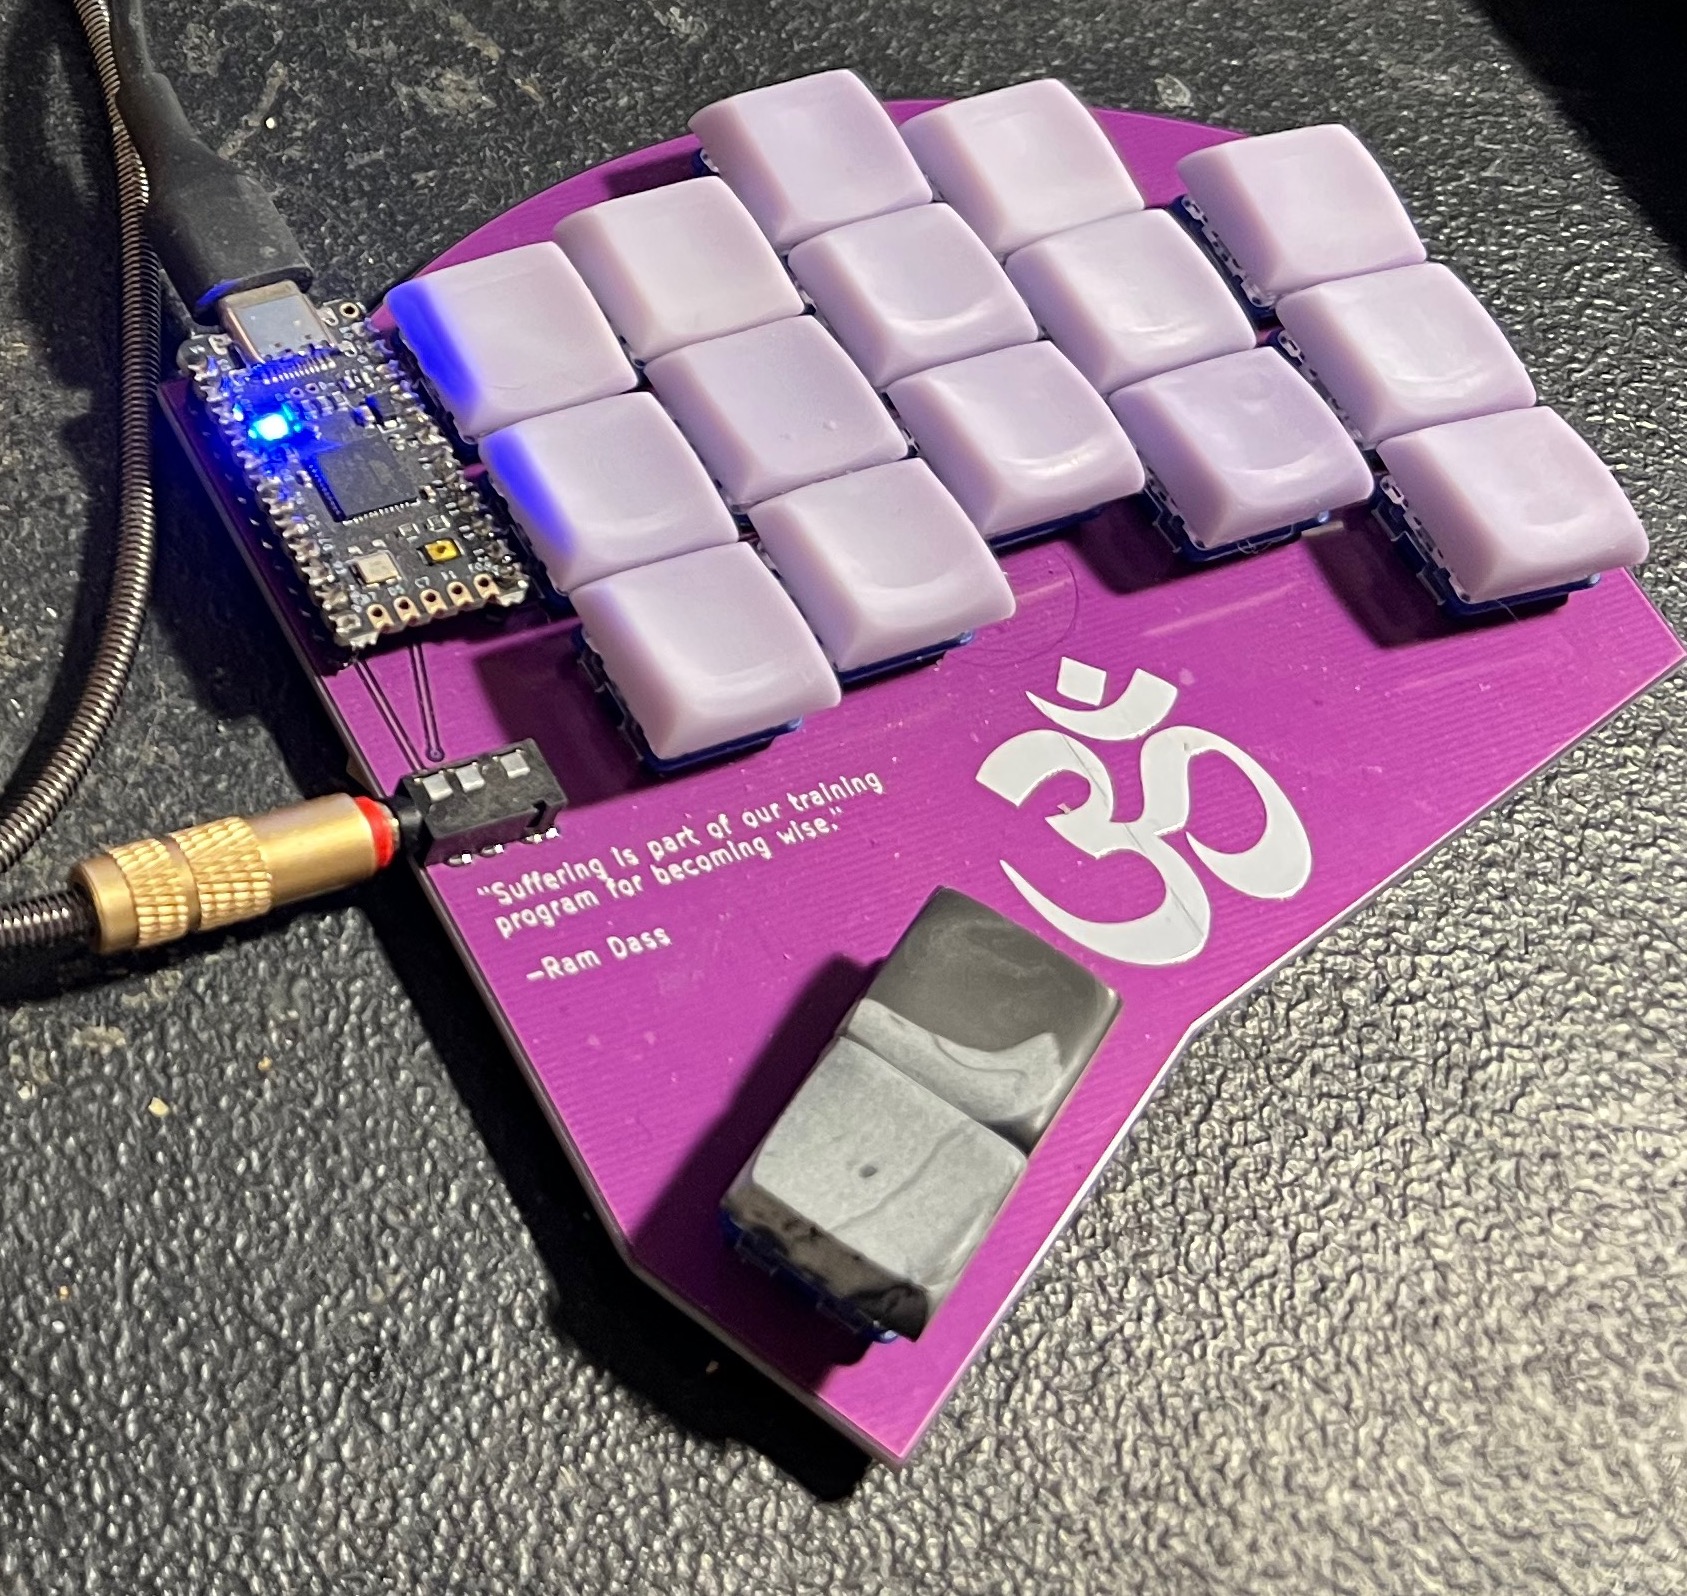 Build with purple CS caps